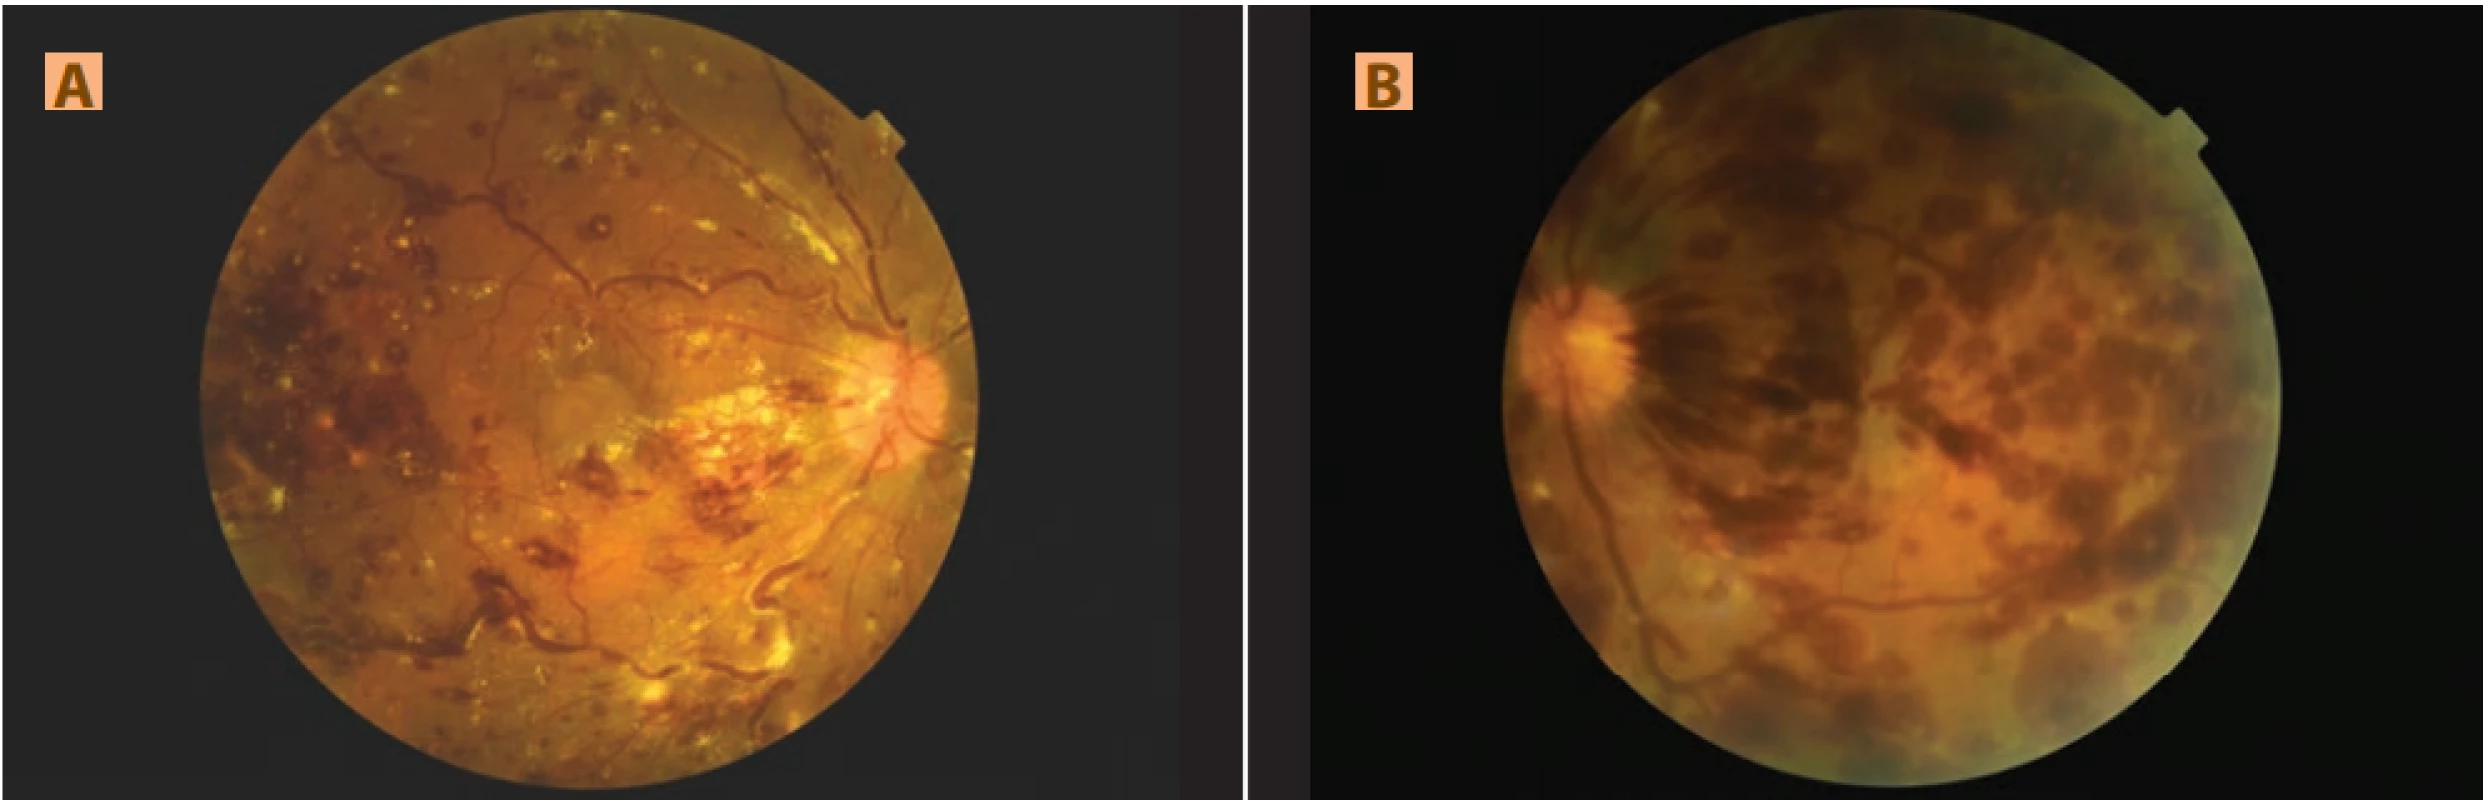 Nález na fundu pravého (A) a levého (B) oka: fundus se skvrnitými, plaménkovitými hemoragiemi a Rothovými skvrnami,
od střední periferie obraz shluků tvrdých exsudátů, vény výrazně dilatované a tortuózní s viditelnými bělavými hmotami v krvi,
(B) rozsáhlejší hemoragie a méně tvrdých exsudátů